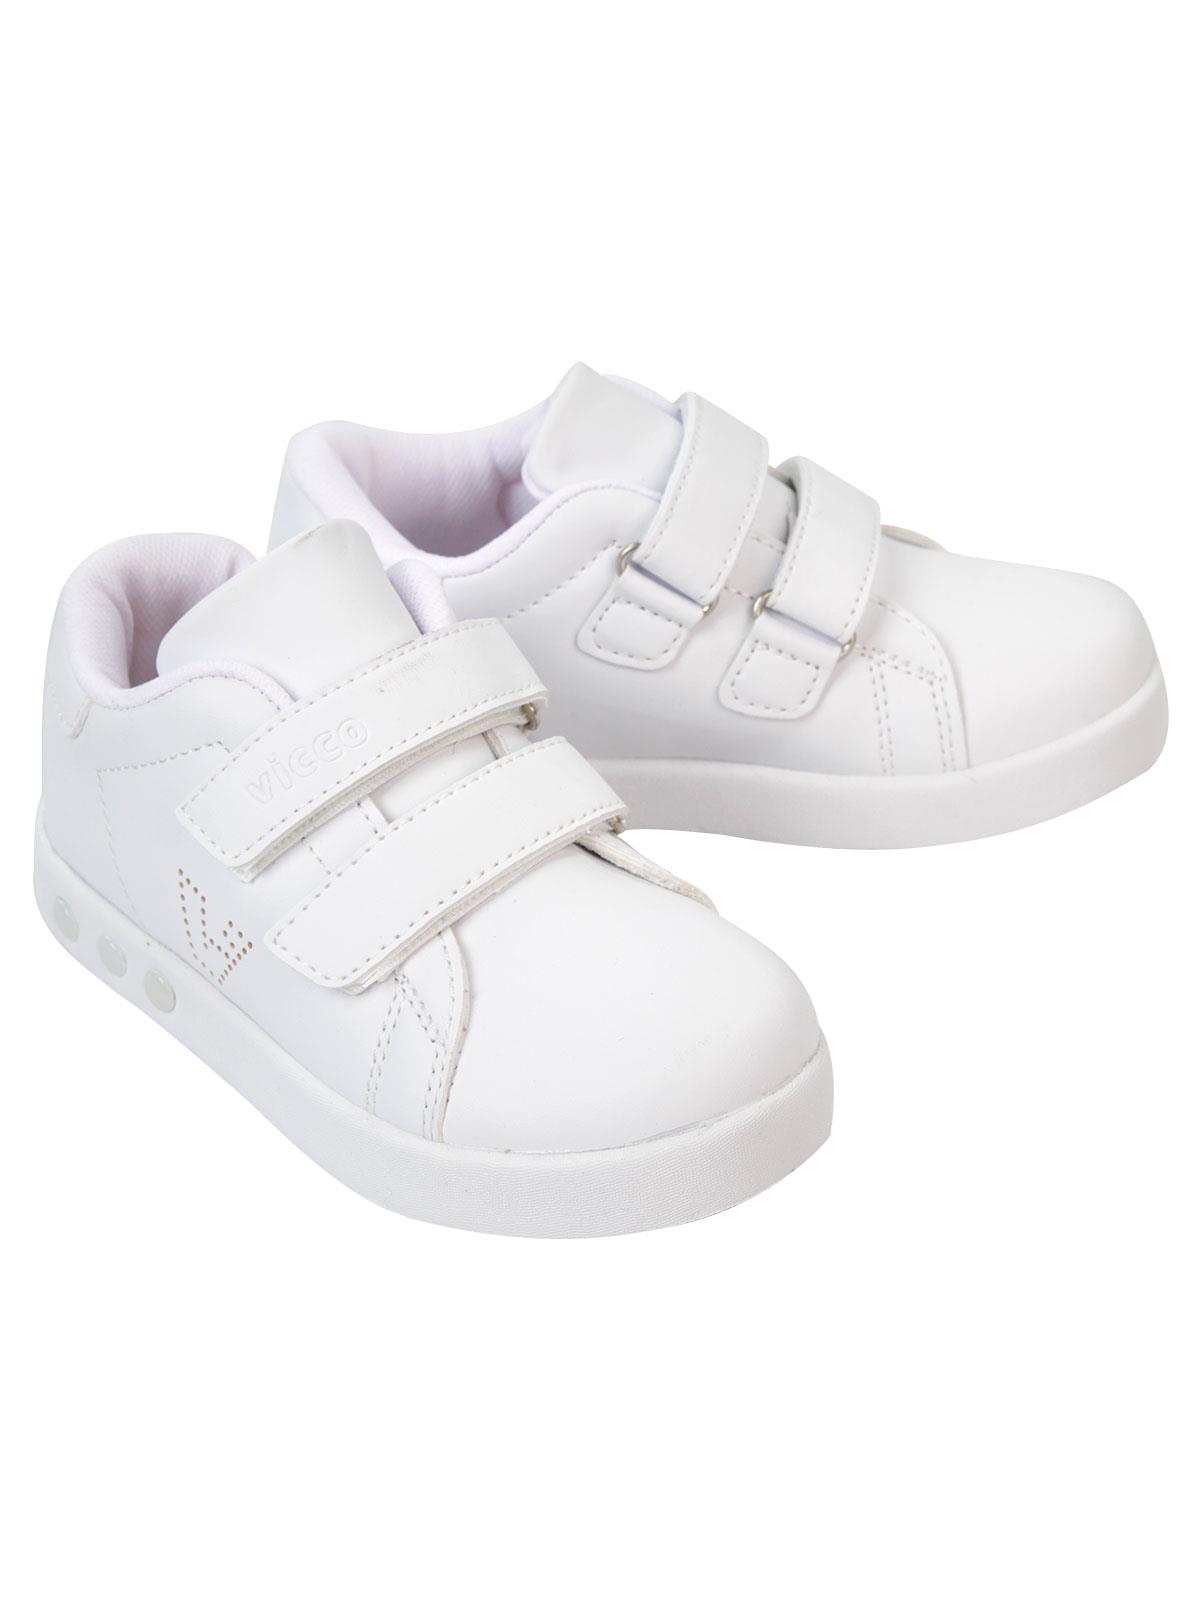 Vicco Çocuk Işıklı Spor Ayakkabıı 26-30 Numara Beyaz